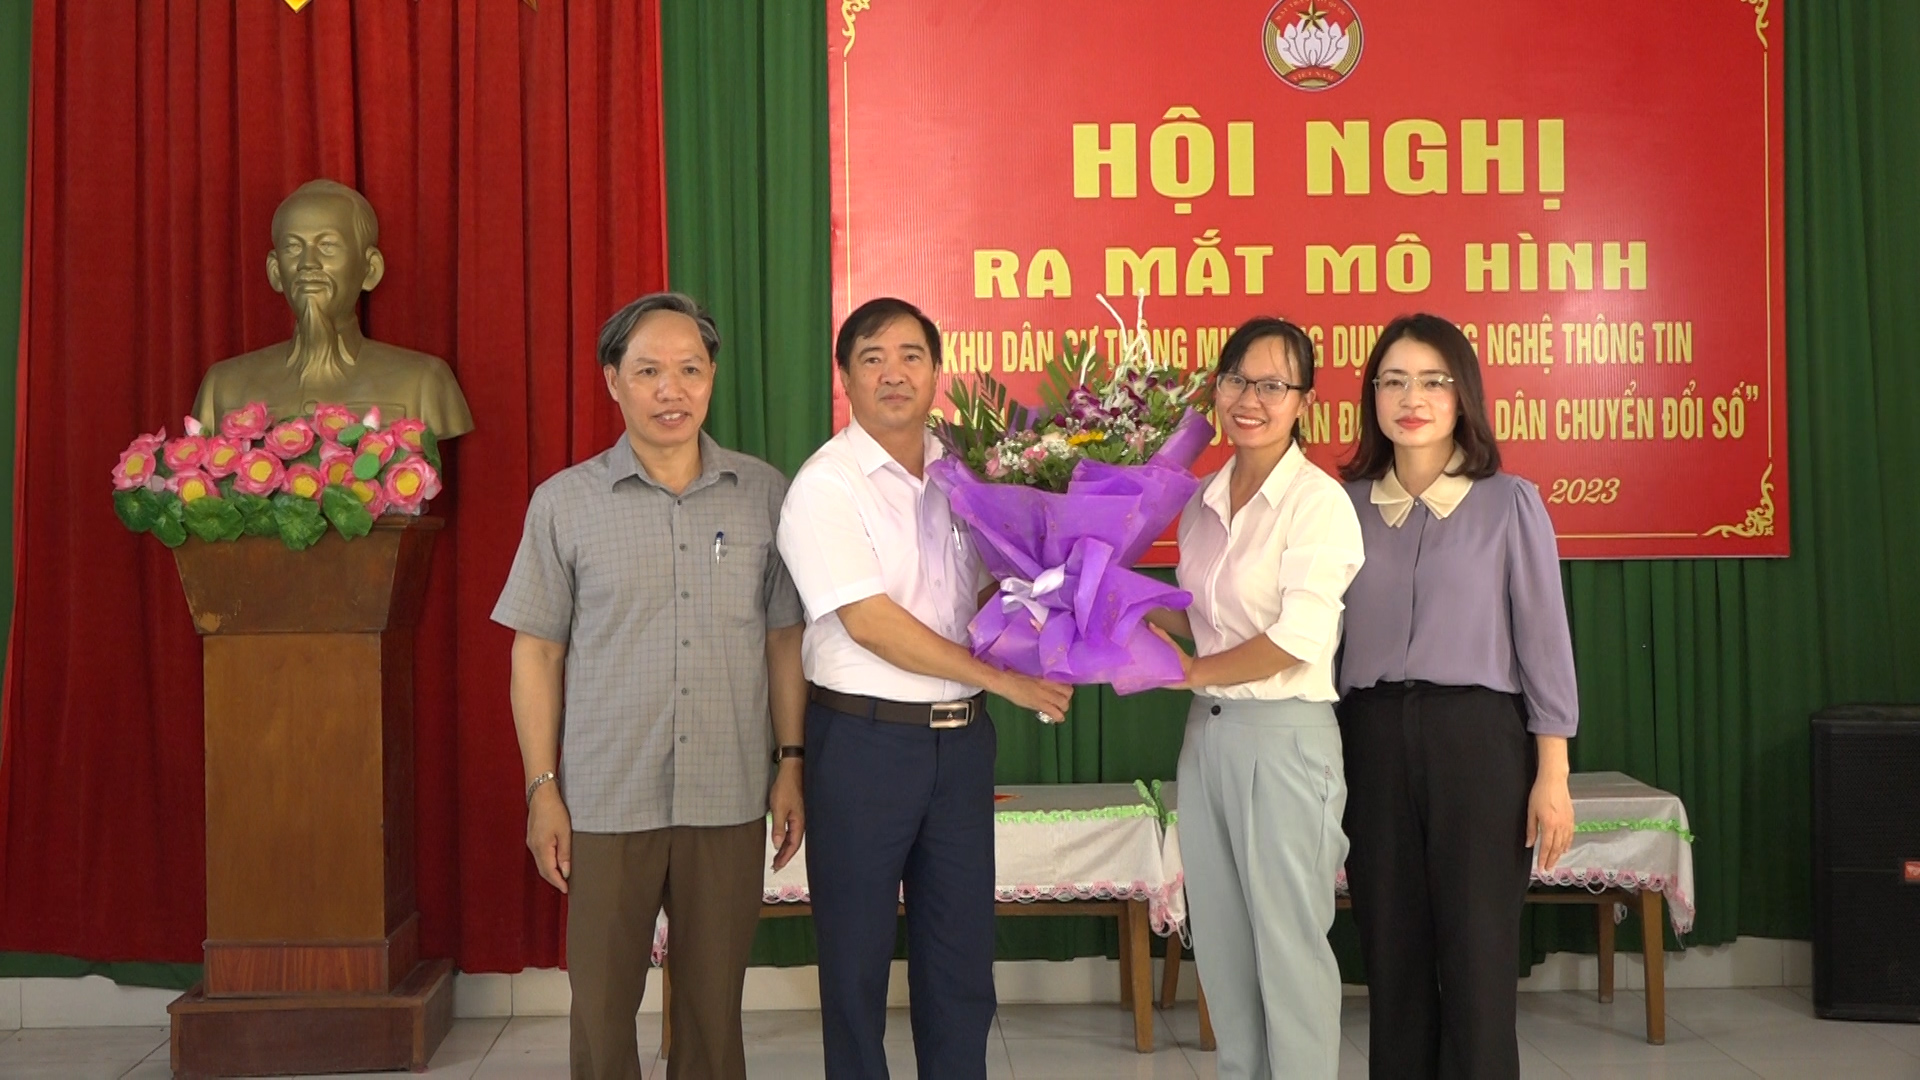 Lãnh đạo MTTQ tỉnh Hà Nam tặng hoa chúc mừng hội nghị ra mắt khu dân cư thông minh.jpg